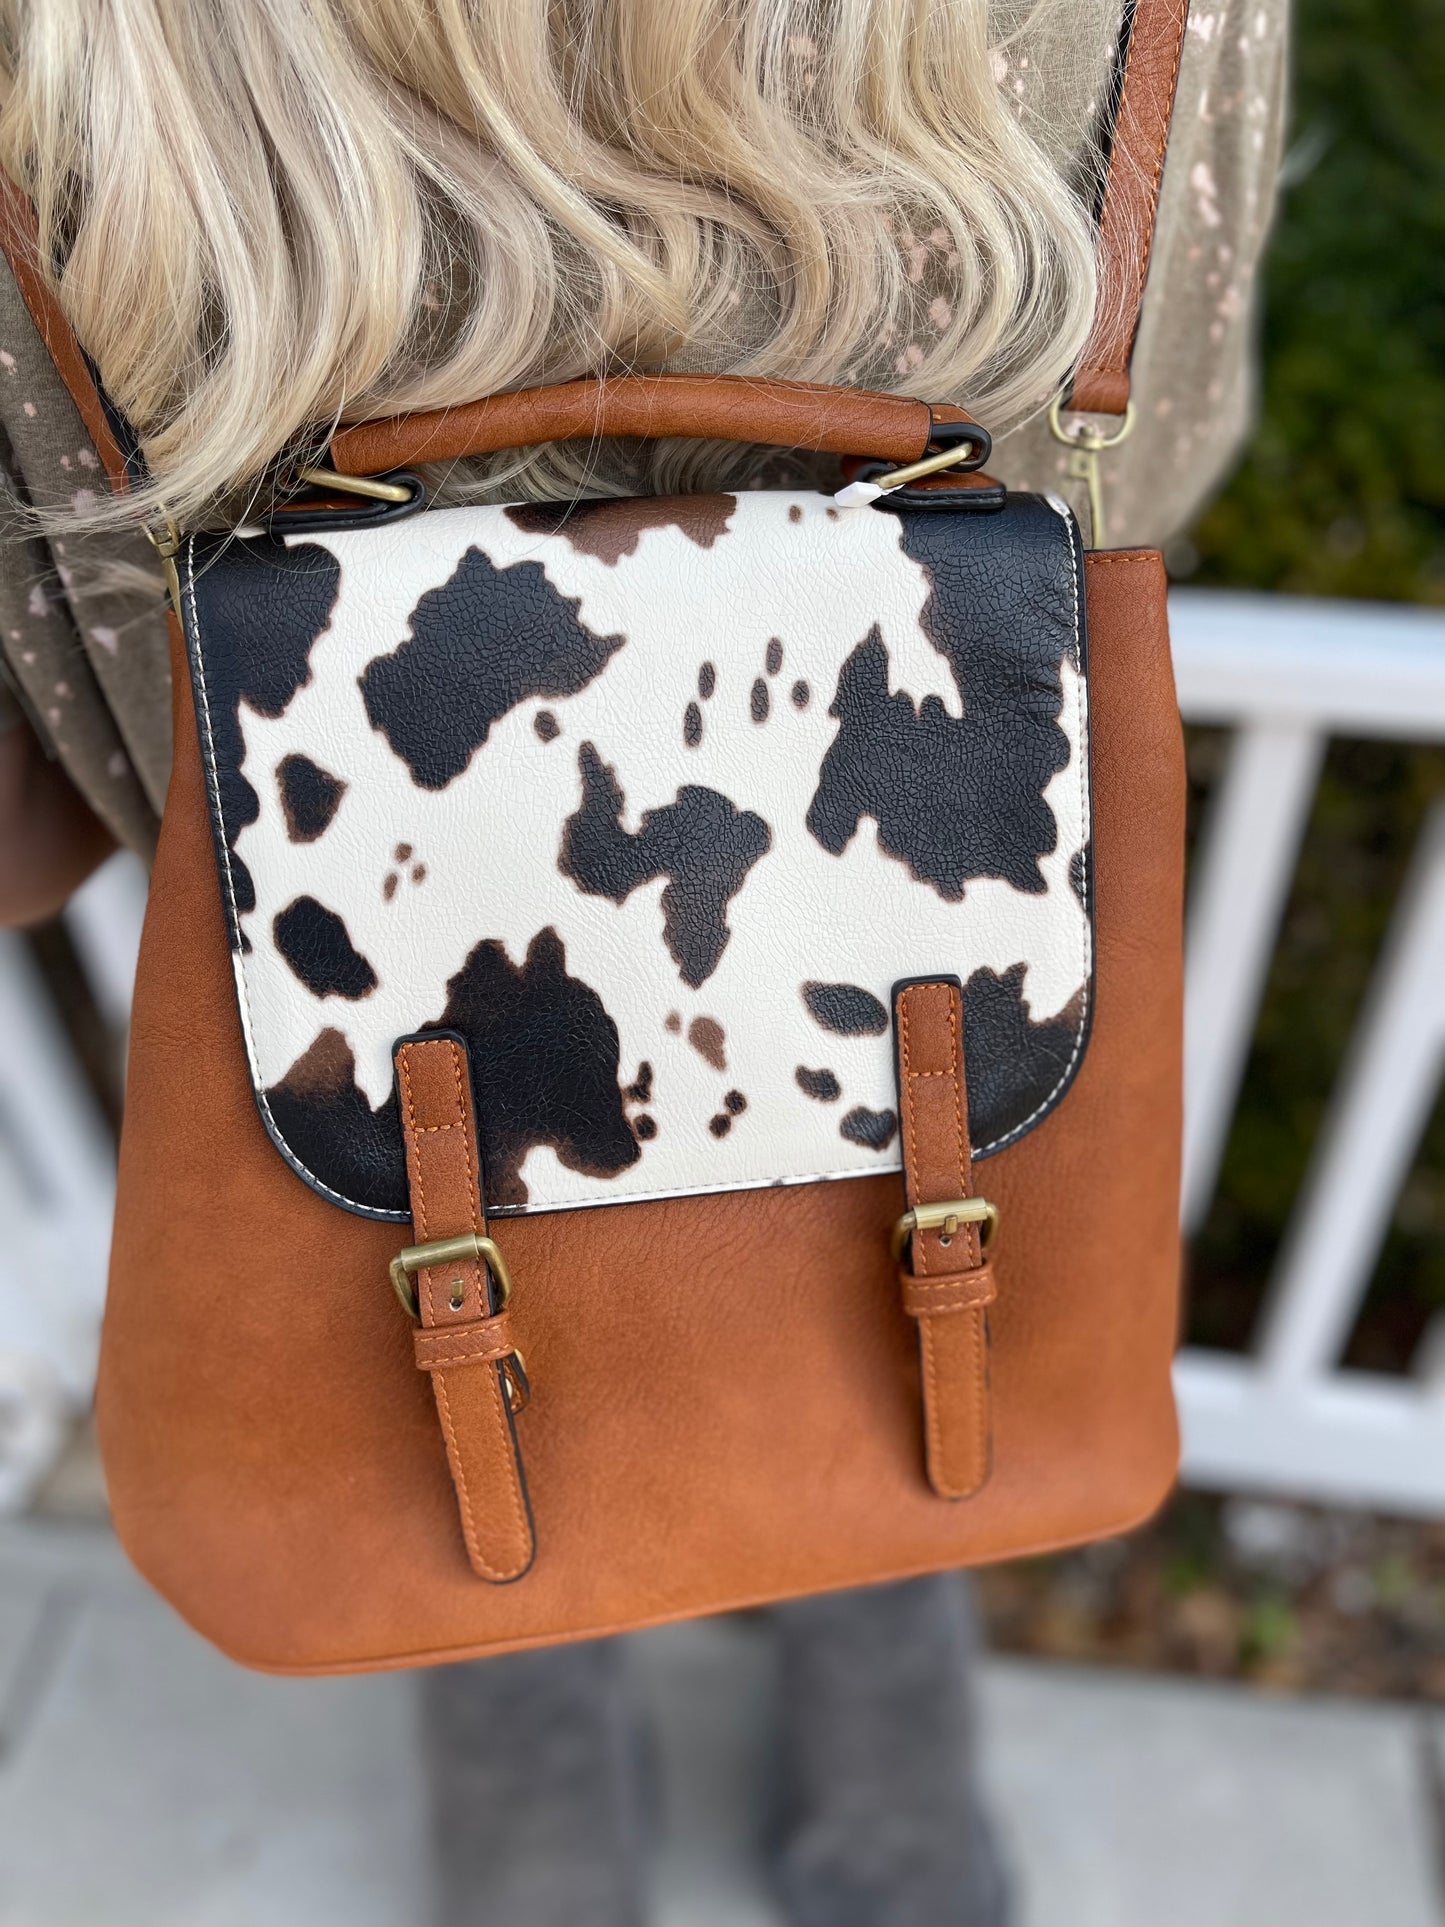 The Nelle Convertible Backpack / Shoulder Bag